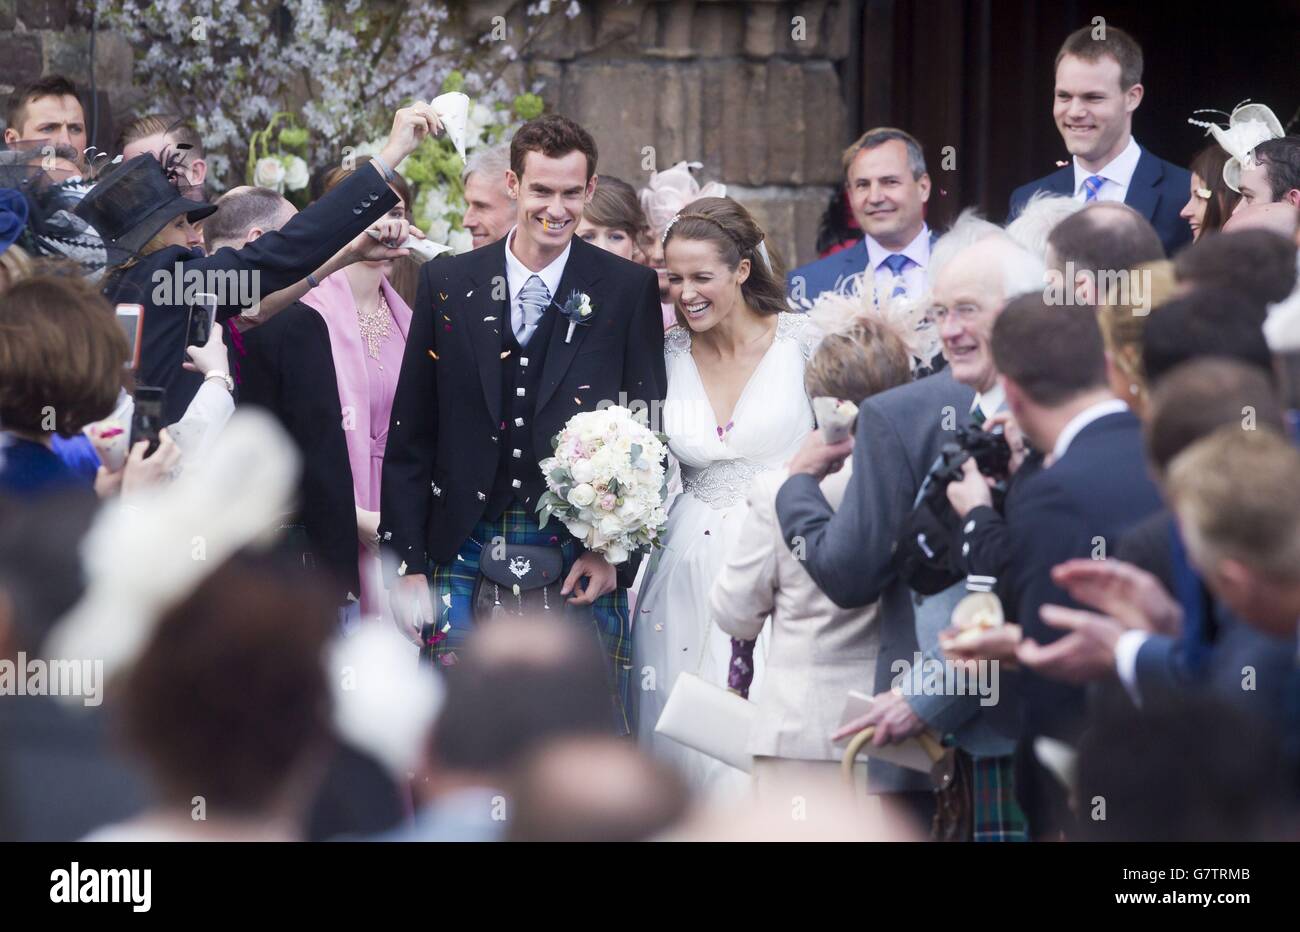 Andy Murray und Kim Sears heiraten - Dunblane. Andy Murray und Kim Sears, die Nummer eins im britischen Tennis nach ihrer Hochzeit in der Dunblane Cathedral. Stockfoto